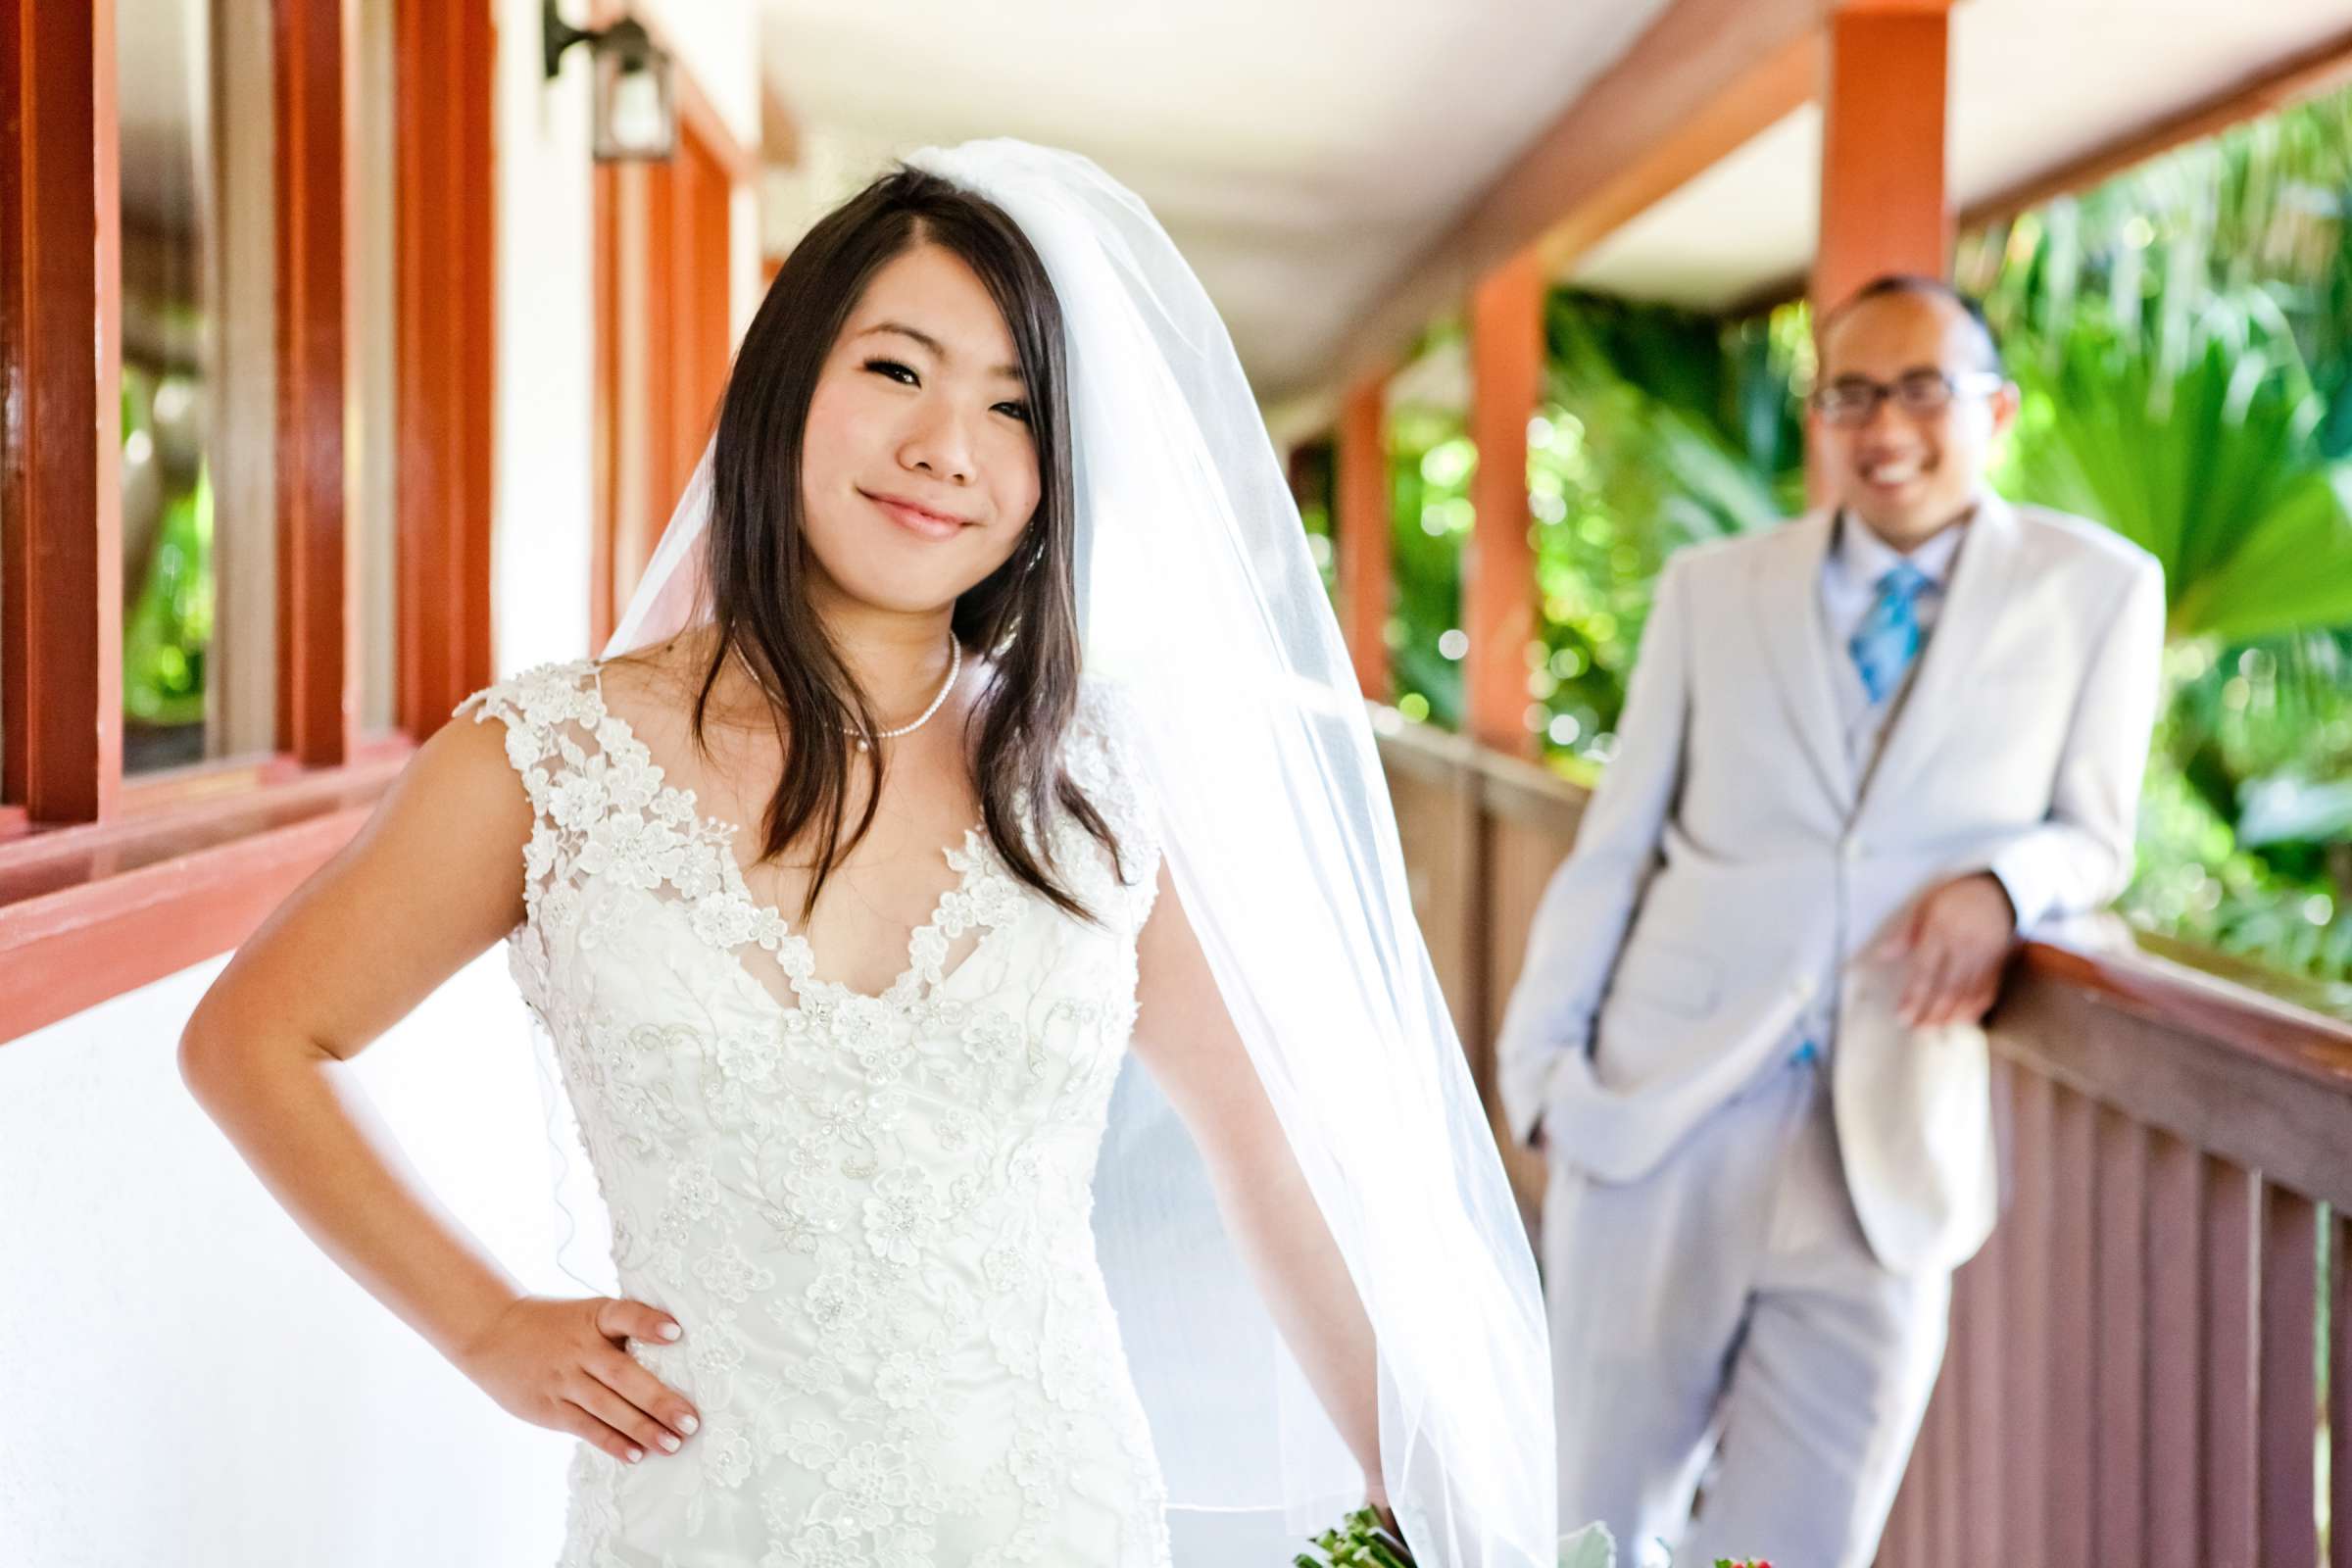 Catamaran Resort Wedding, Yuko and James Wedding Photo #347364 by True Photography